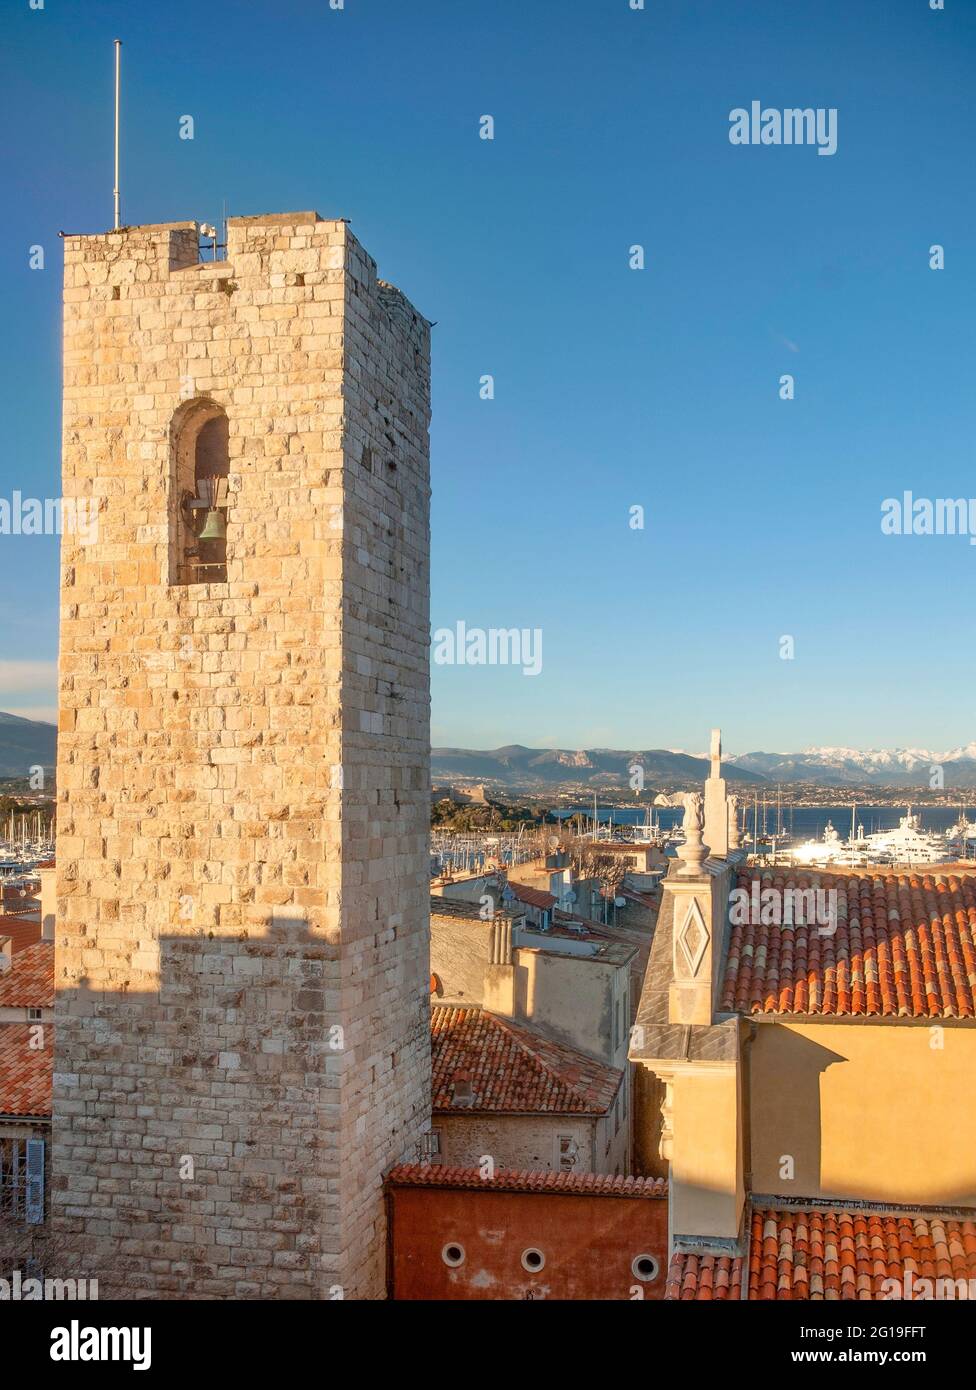 La torre dell'ex castello Grimaldi di Antibes, che ospita un famoso museo Picasso. Foto Stock